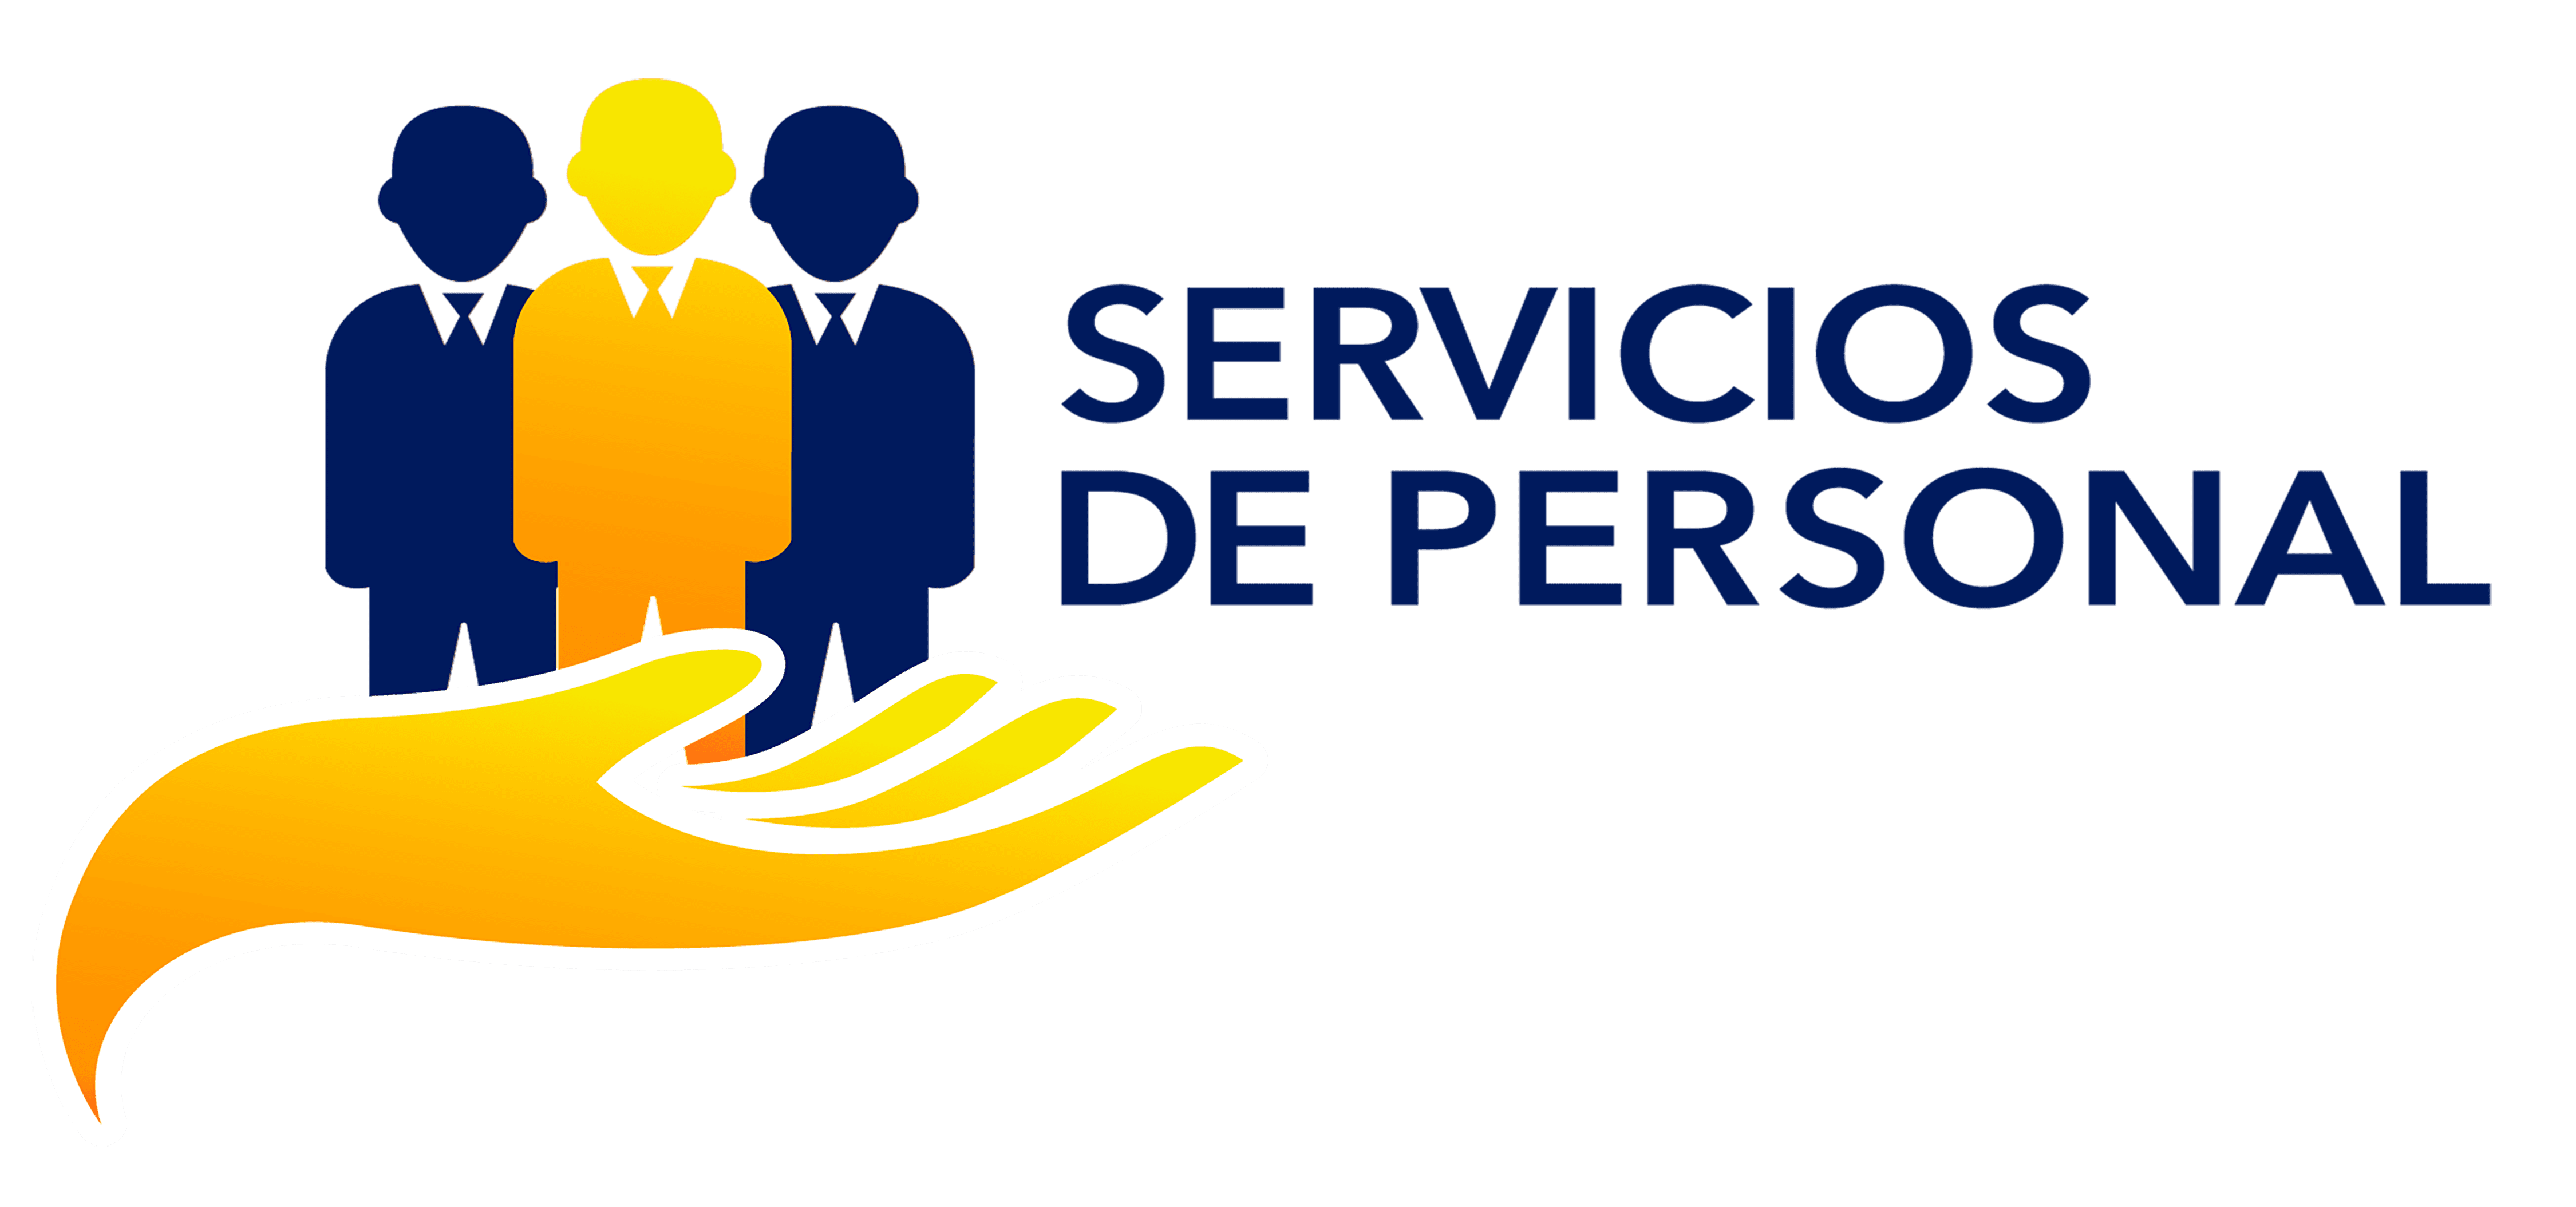 Servicios de Personal